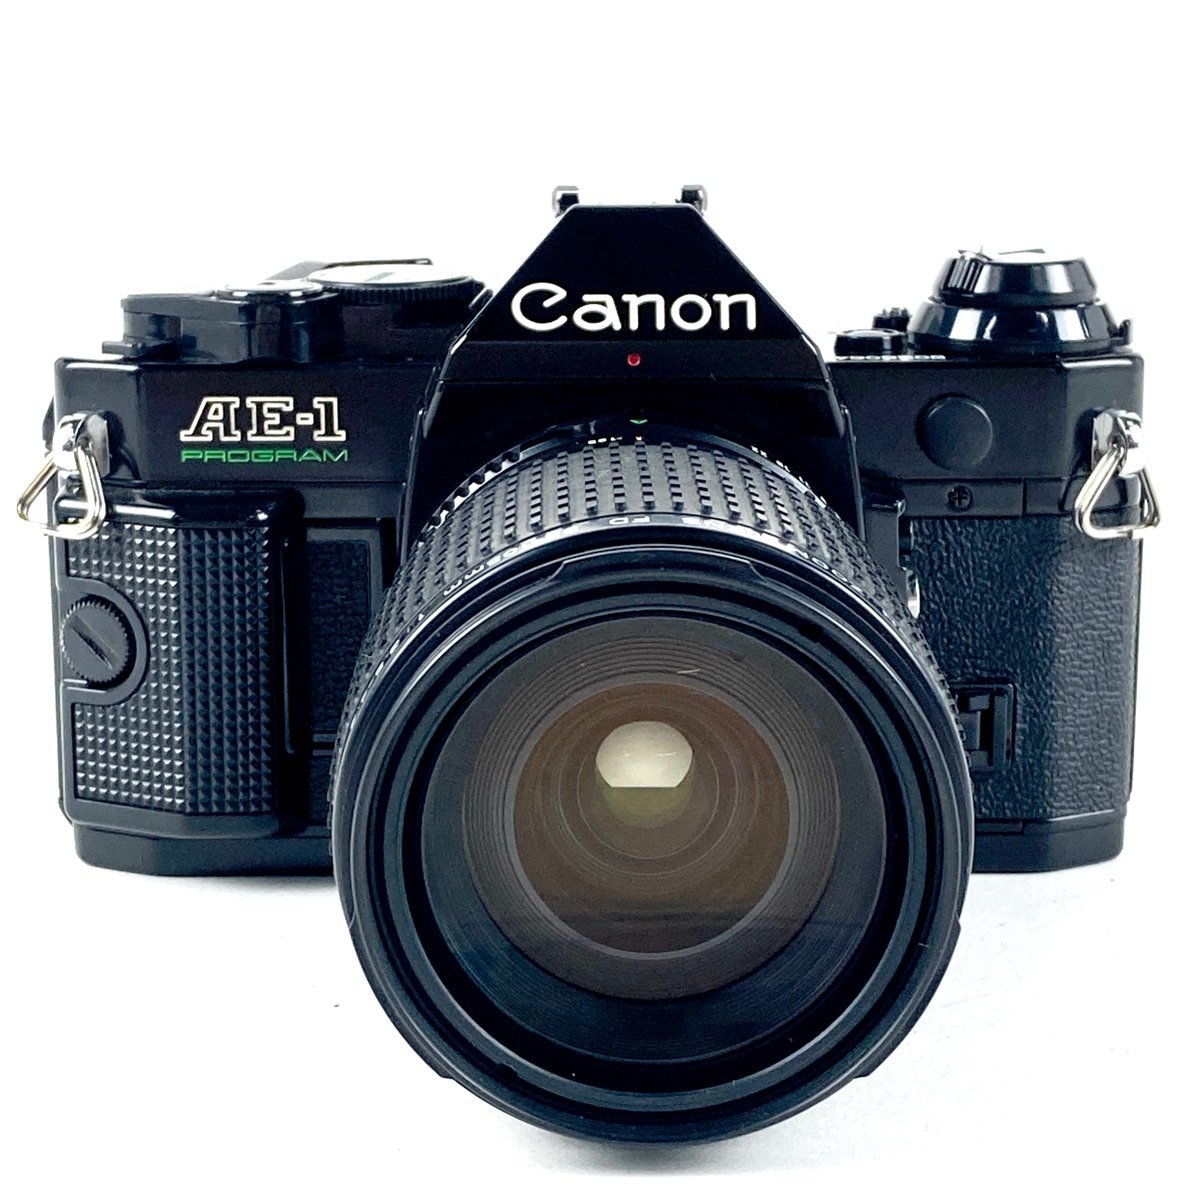 キヤノン Canon AE-1 PROGRAM + NEW FD 35-105mm F3.5-4.5 フィルム マニュアルフォーカス 一眼レフカメラ 【中古】